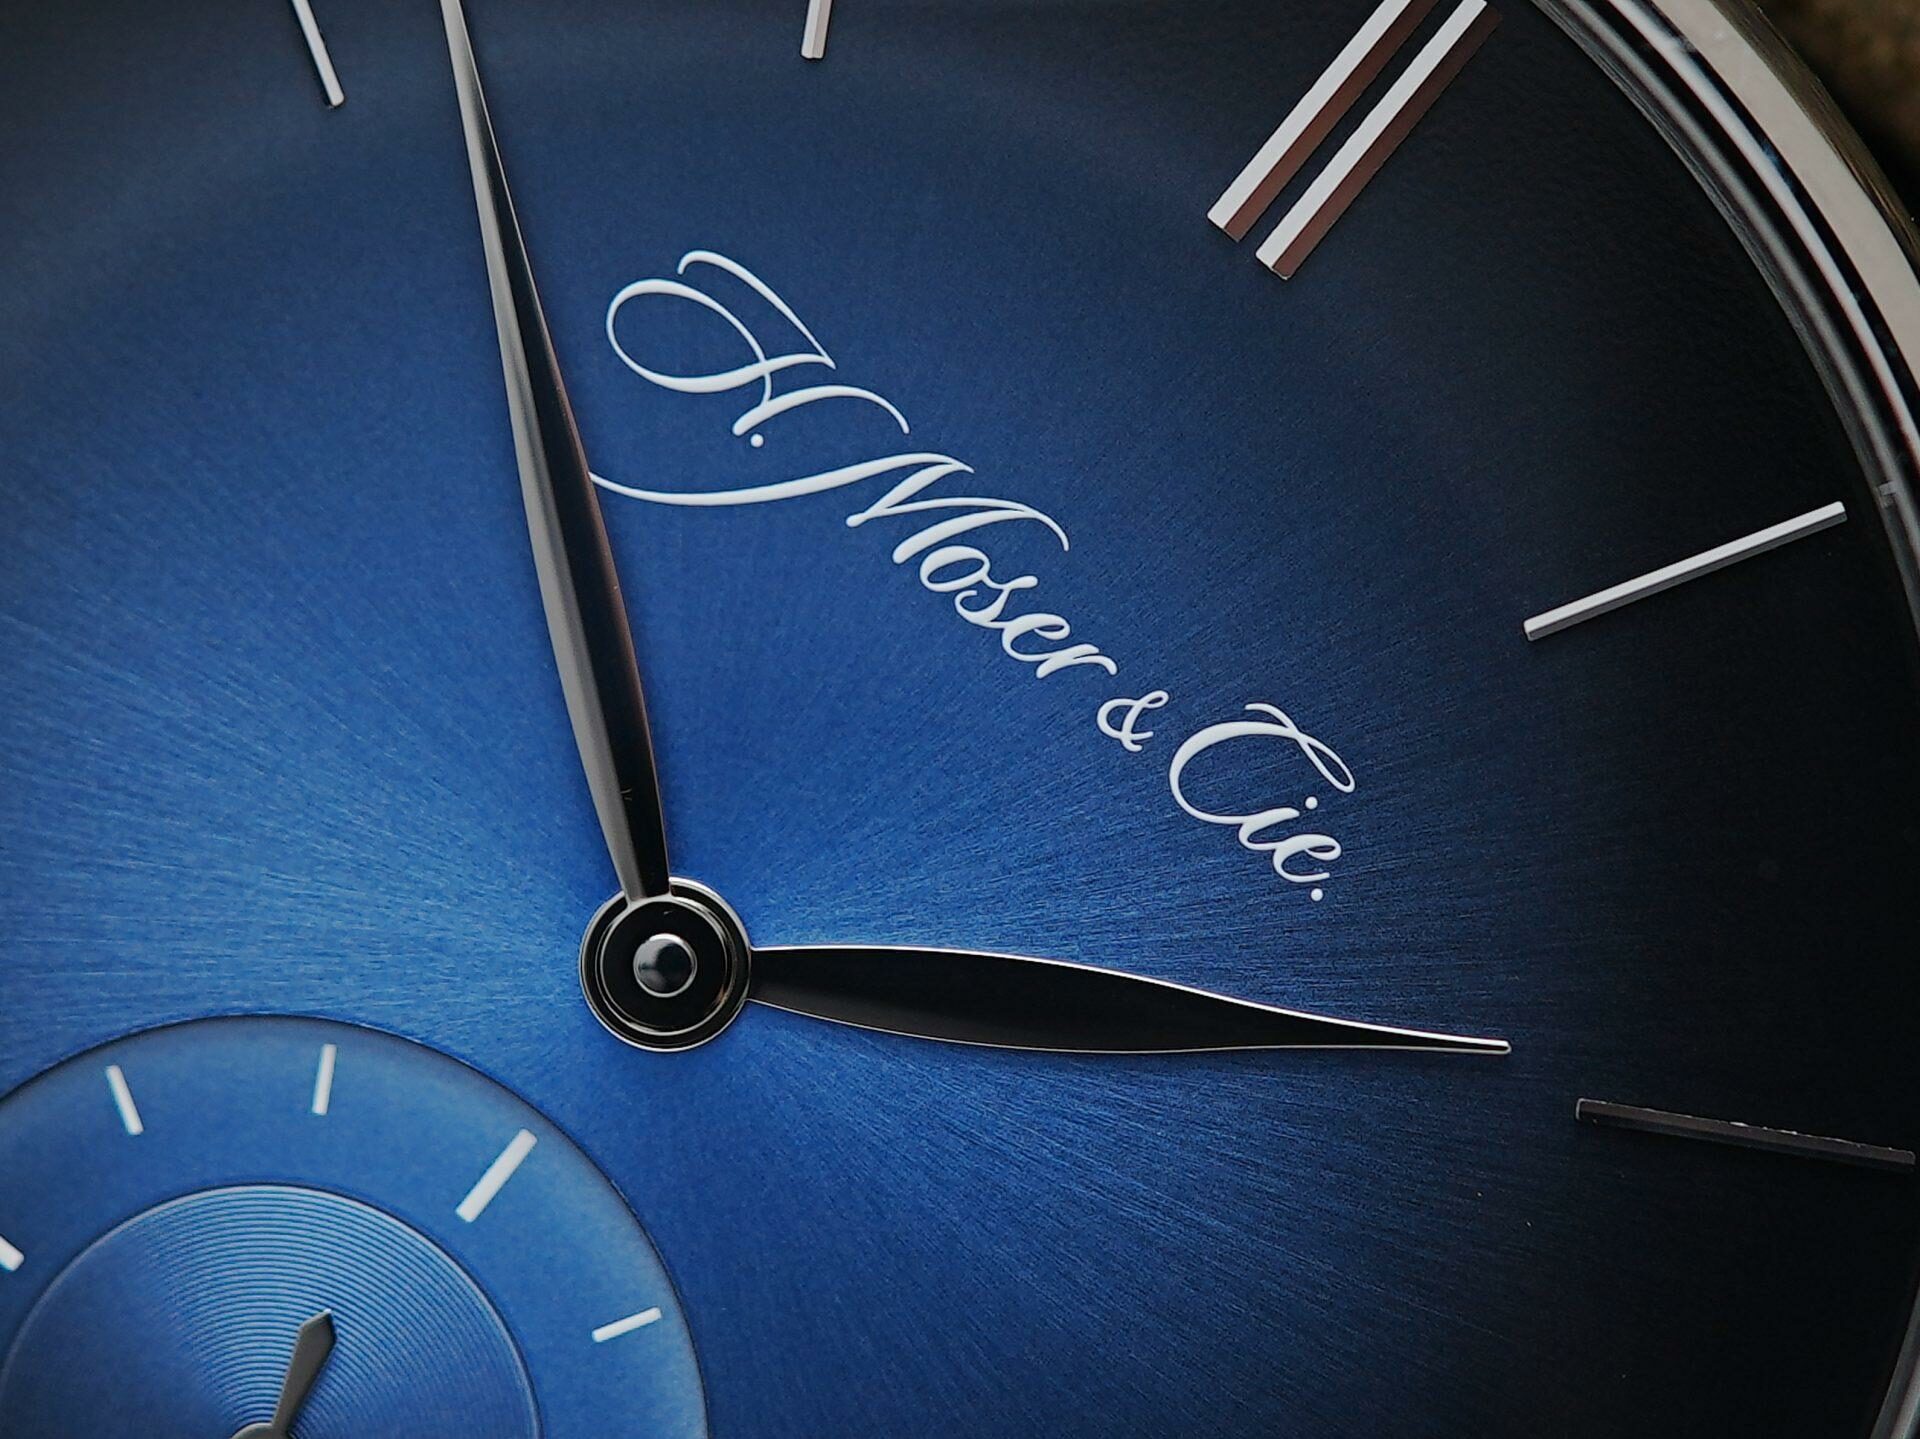 H.Moser & Cie. Venturer Small Seconds Xl watch dial up close.